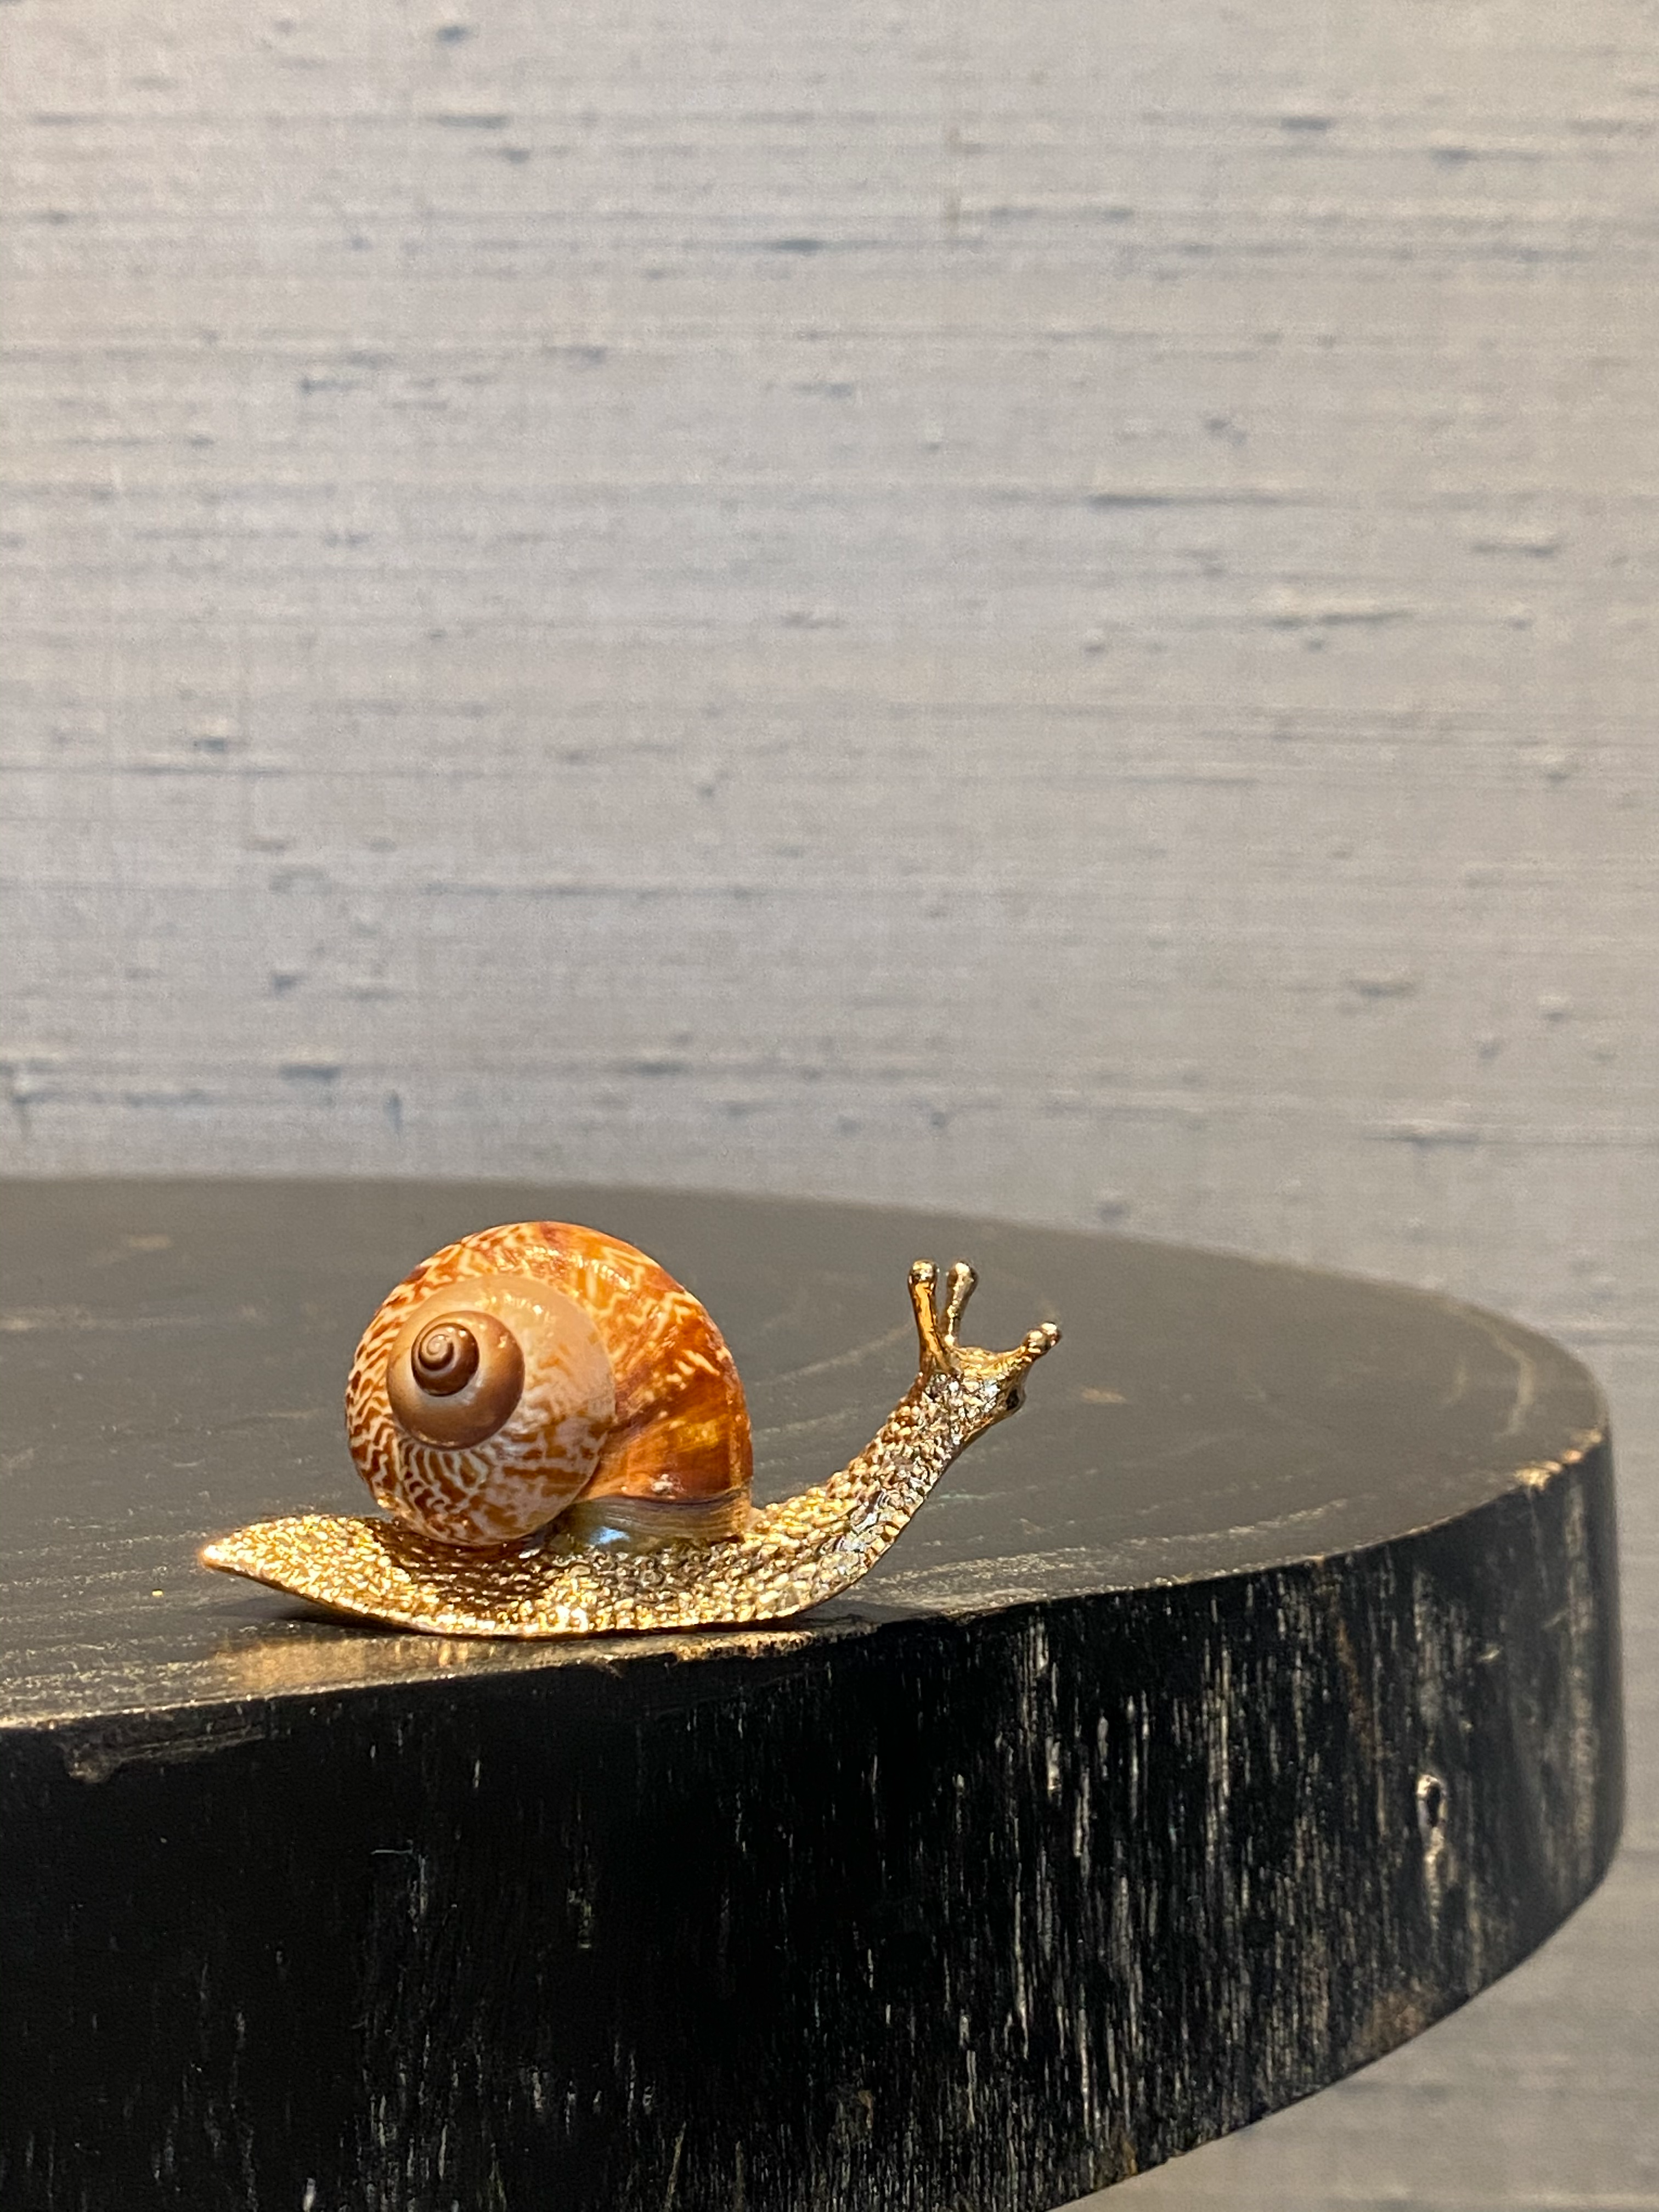 Slakje / Snail - Decoratie / Decoration / Gifts